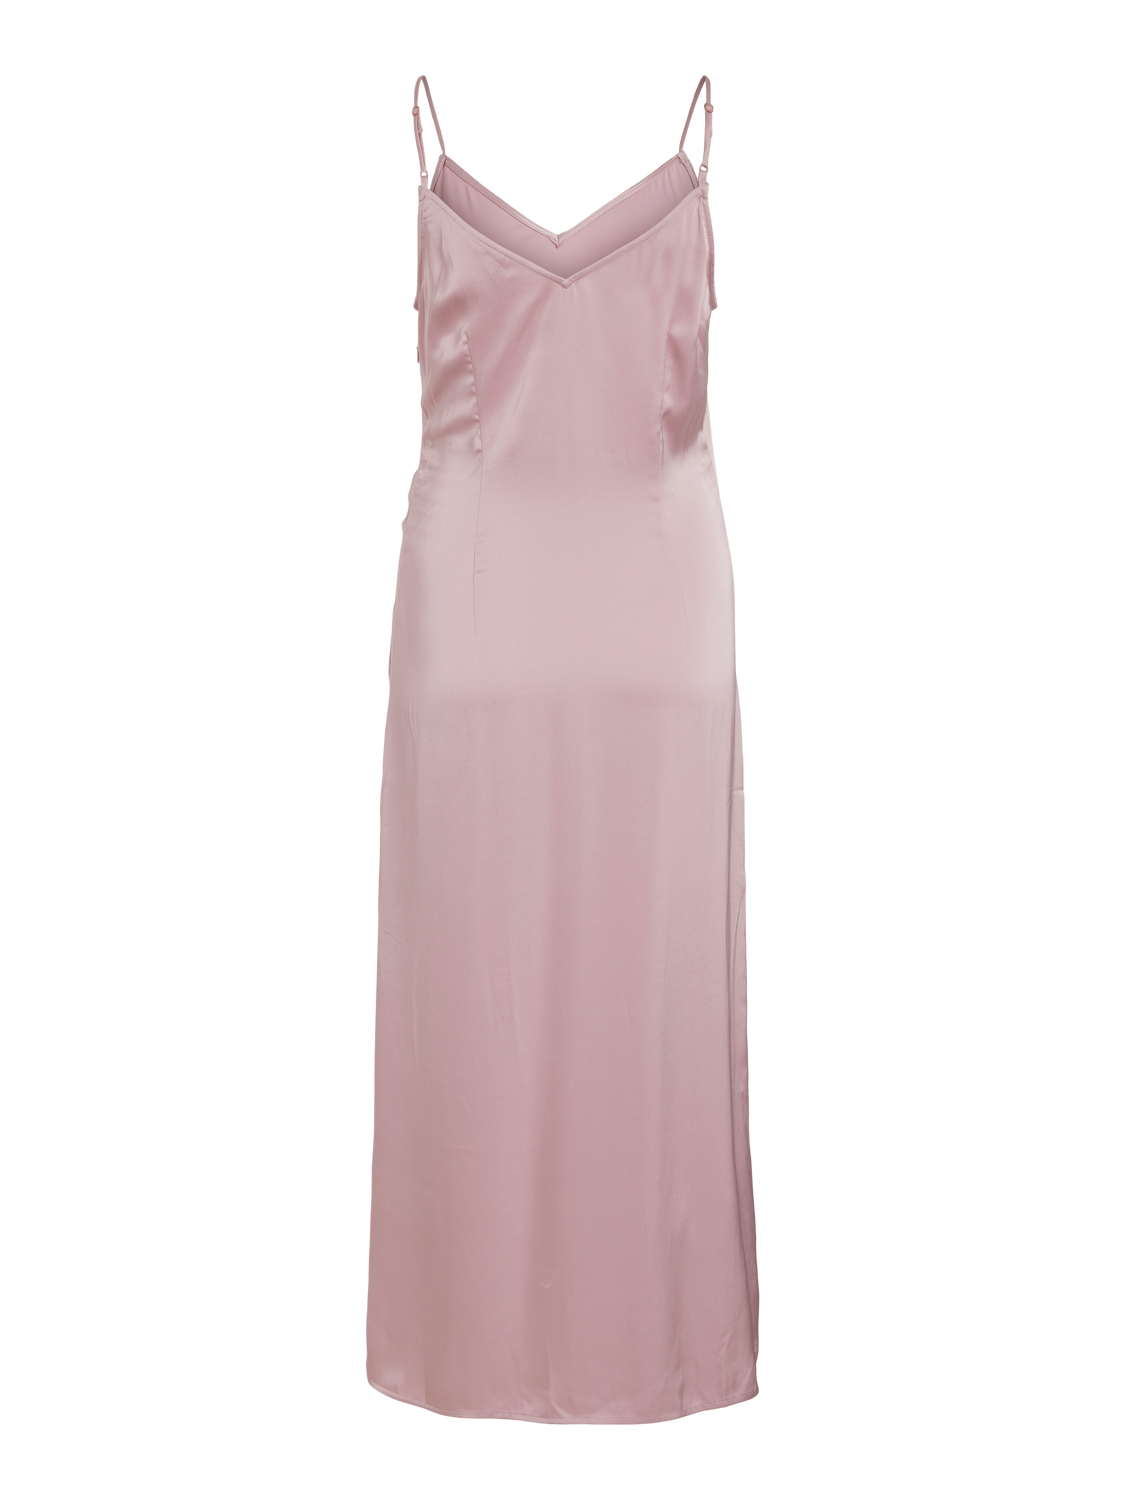 VIENNA Dress - Silver Pink